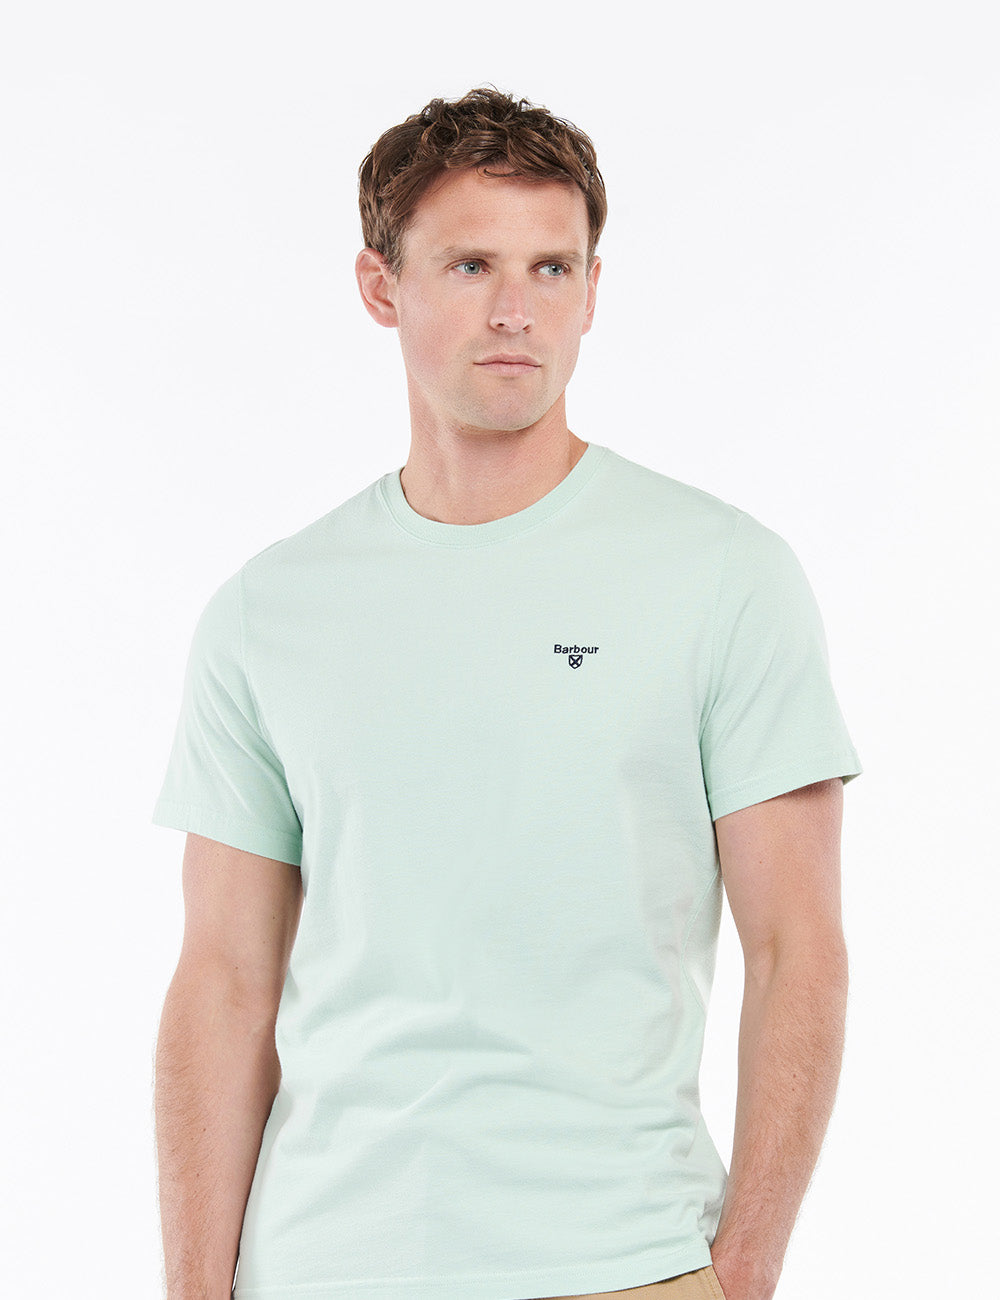 Barbour Sports T-Shirt - Dusty Mint